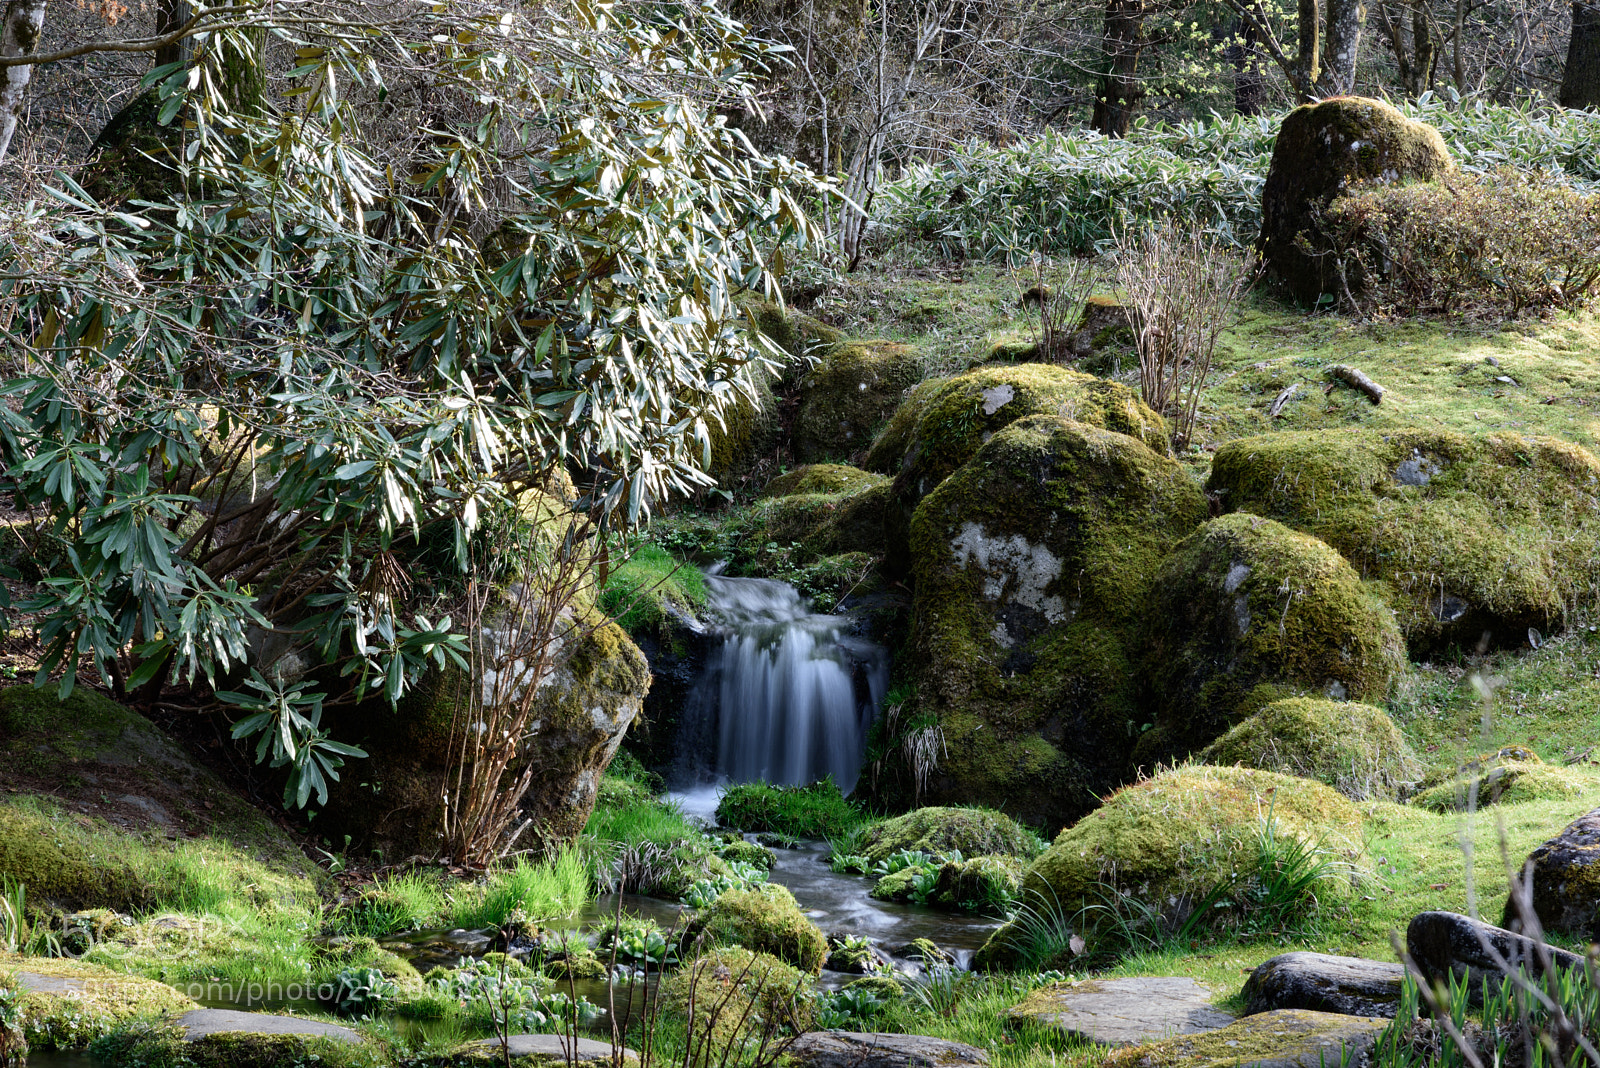 Nikon D750 sample photo. Nikko imperial villa gardens photography